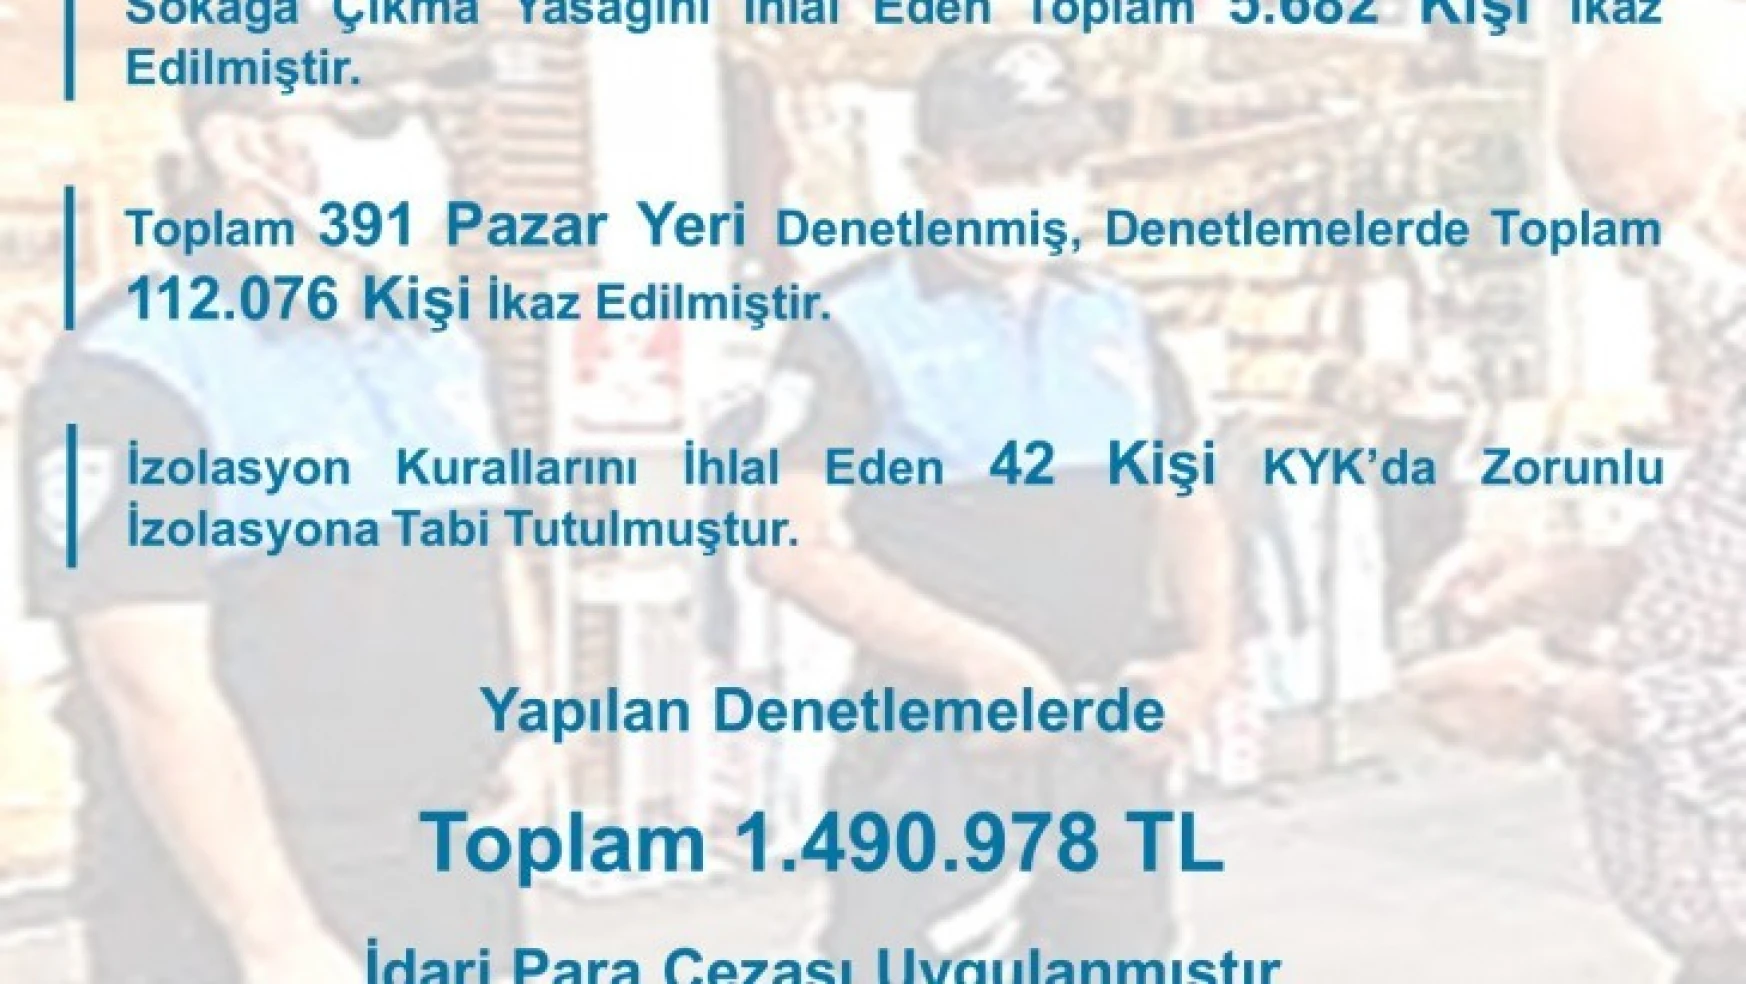 Aydın'da 1.5 milyonluk korona cezası